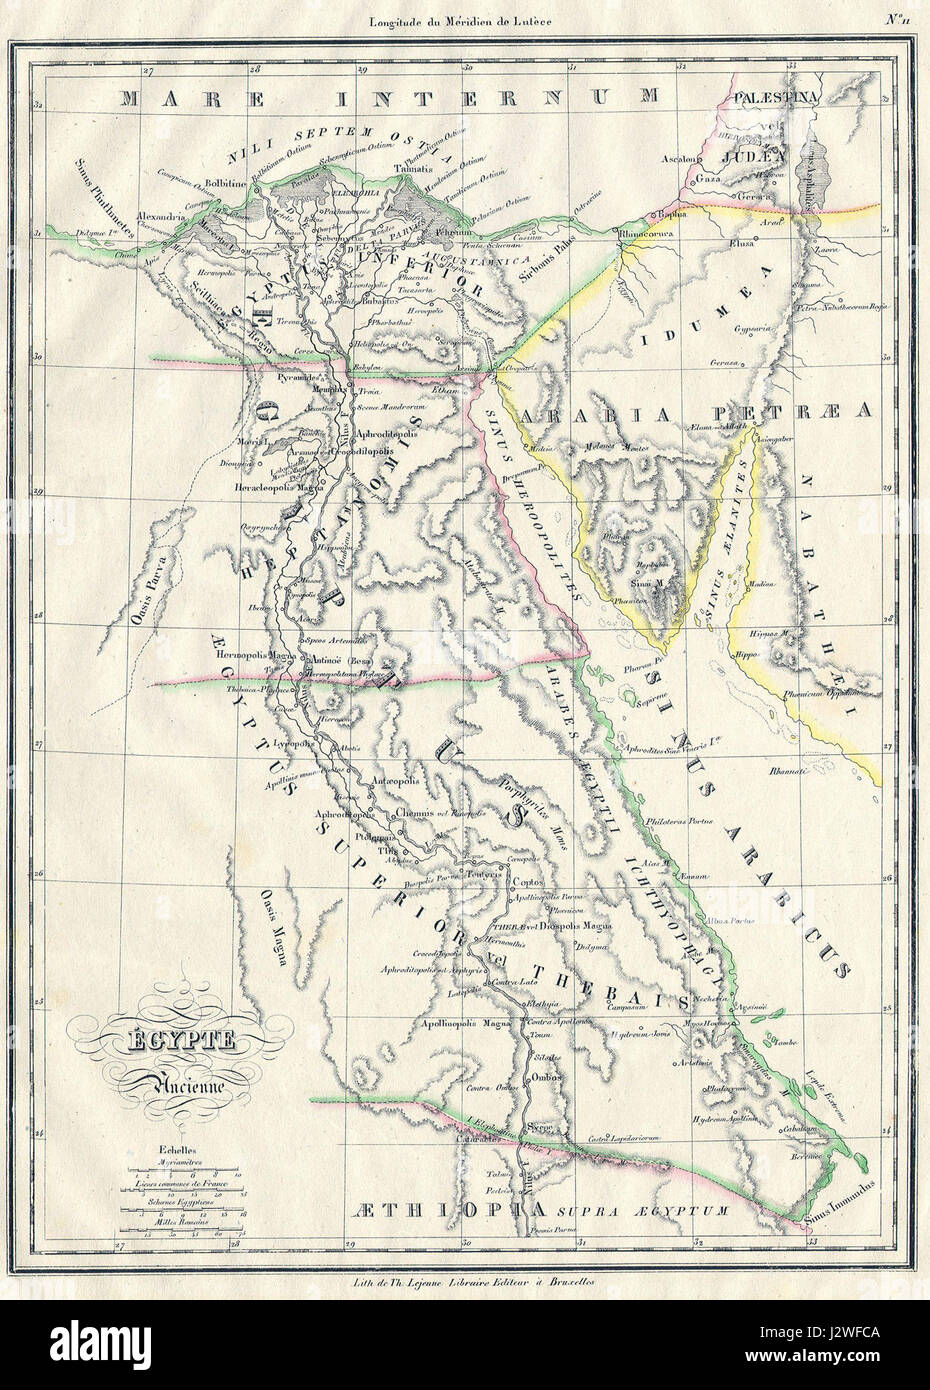 1837 Malte-Brun Karte des alten Ägypten, Nubia (Sudan) und Abessinien (Äthiopien) - Geographicus - EgyptAncient-mb-1837 Stockfoto